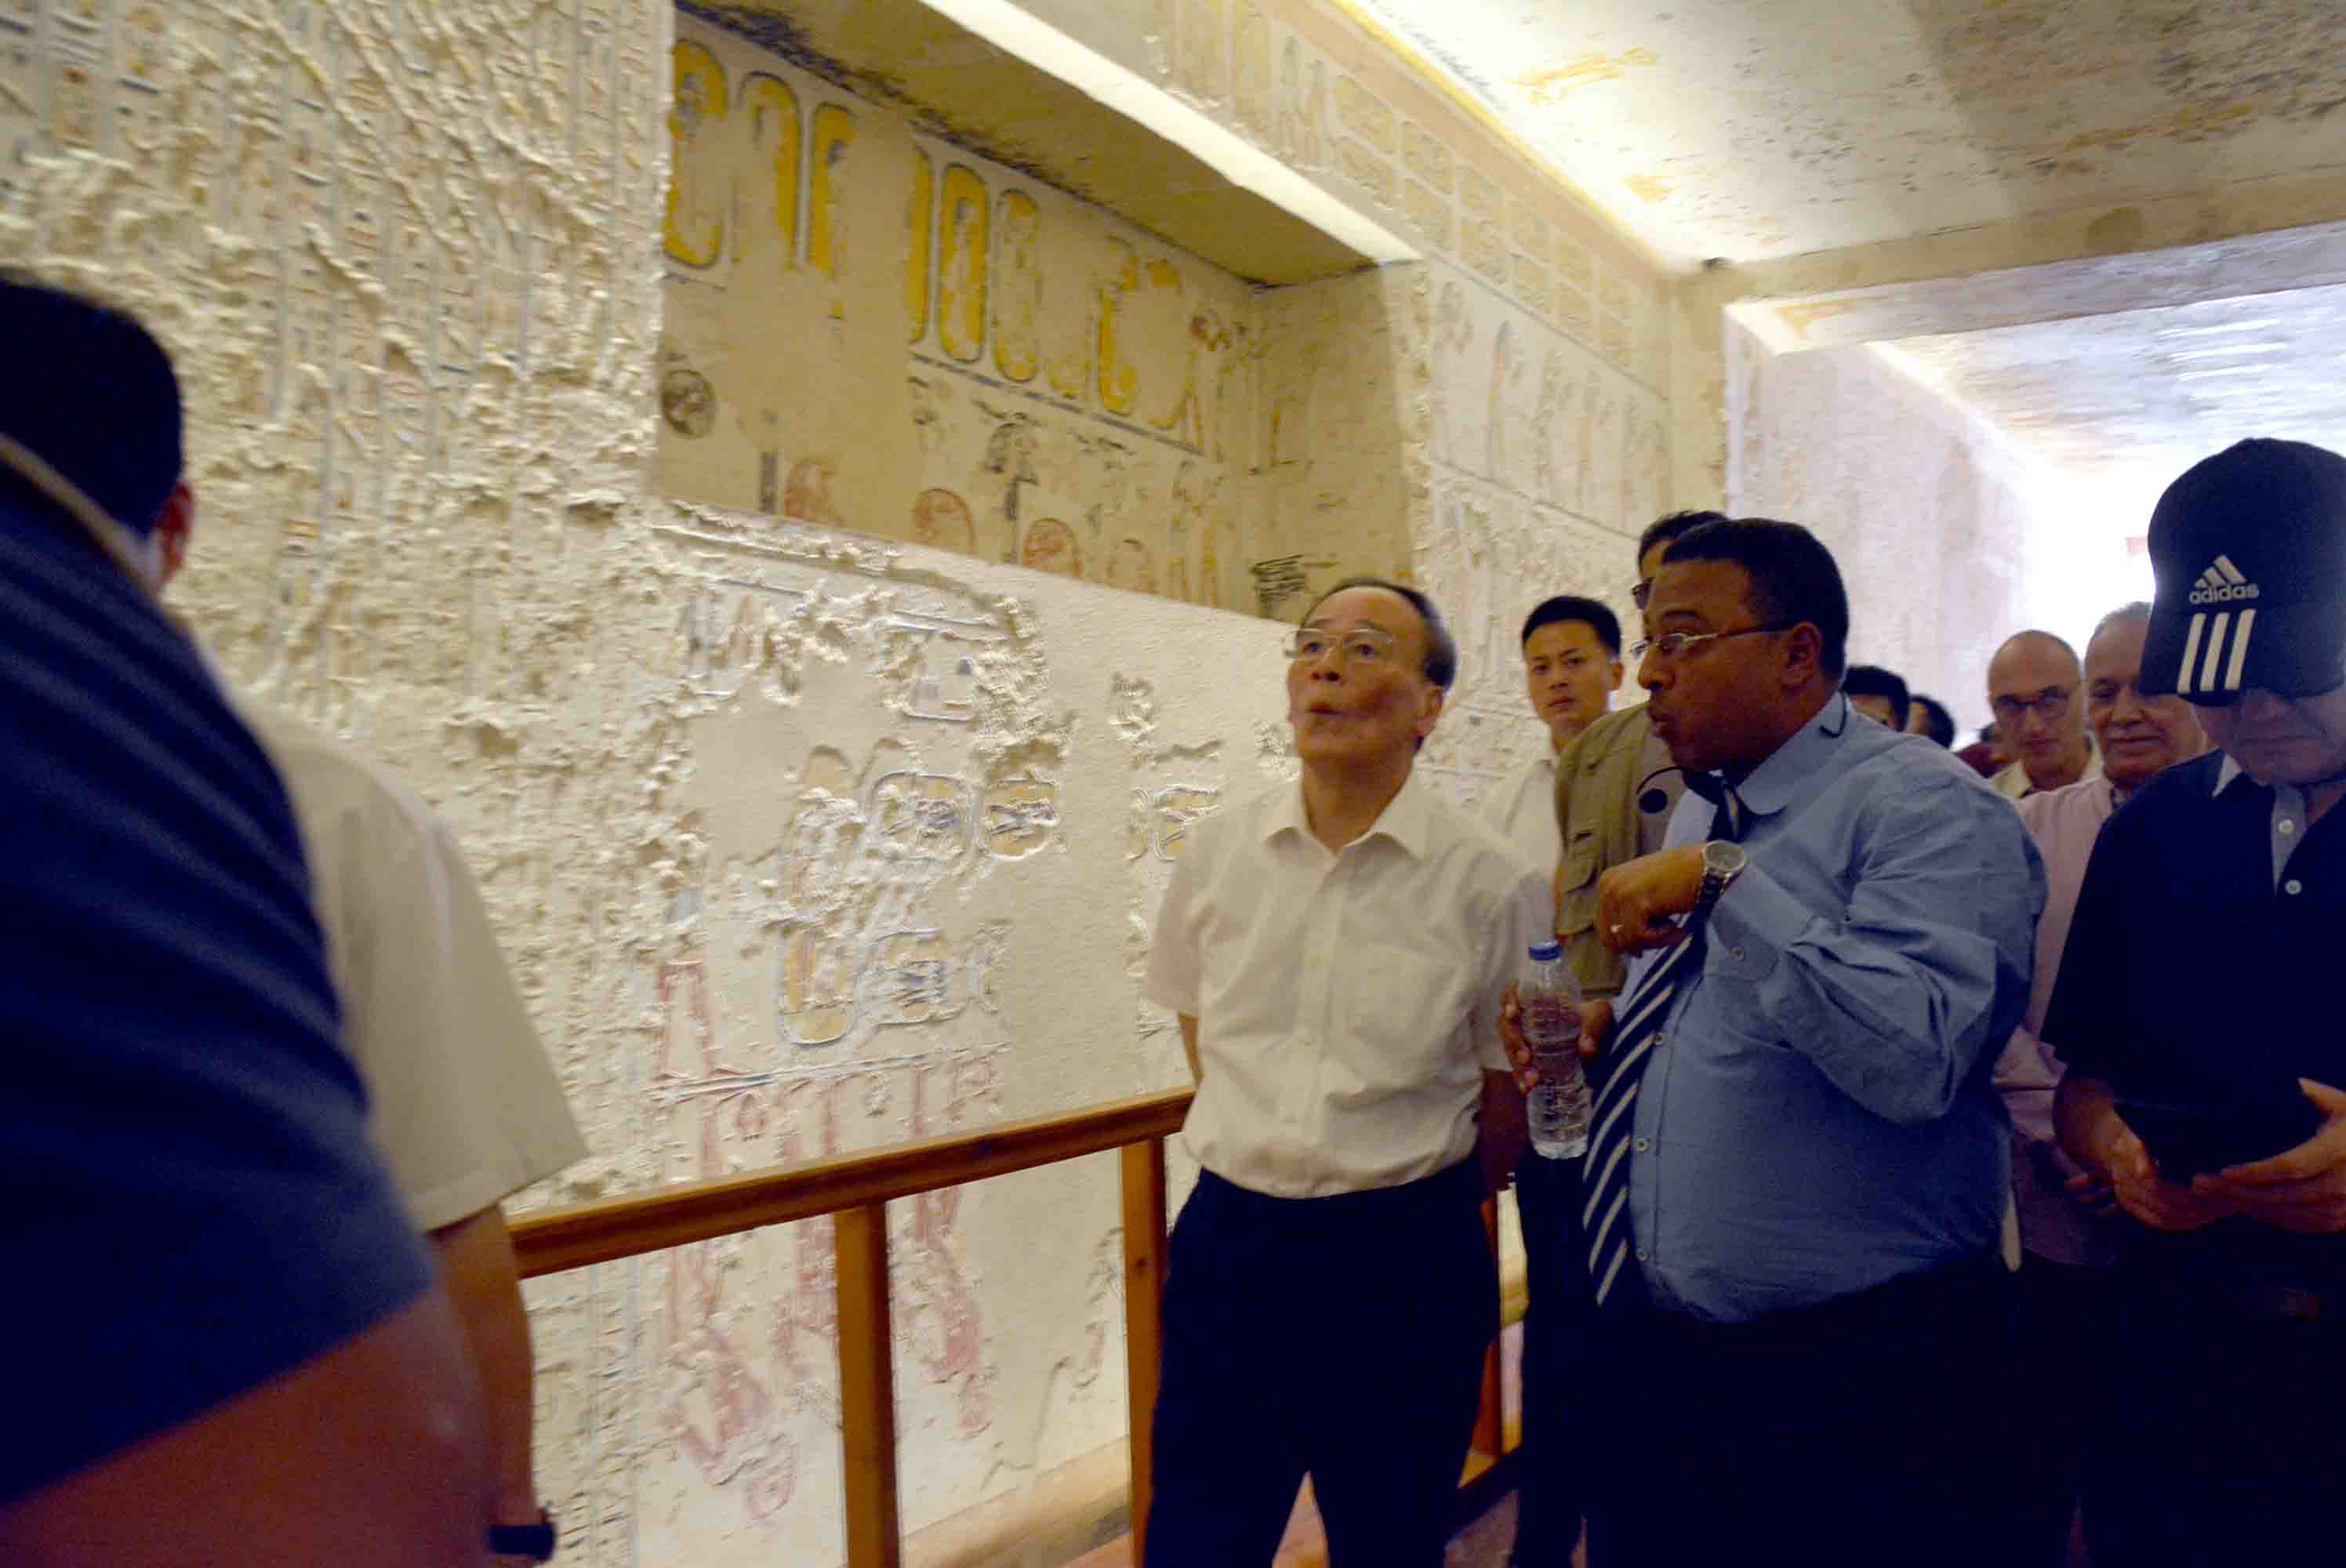 نائب الرئيس الصيني يواصل جولاته بزيارة مقابر ملوك غرب الأقصر (2)